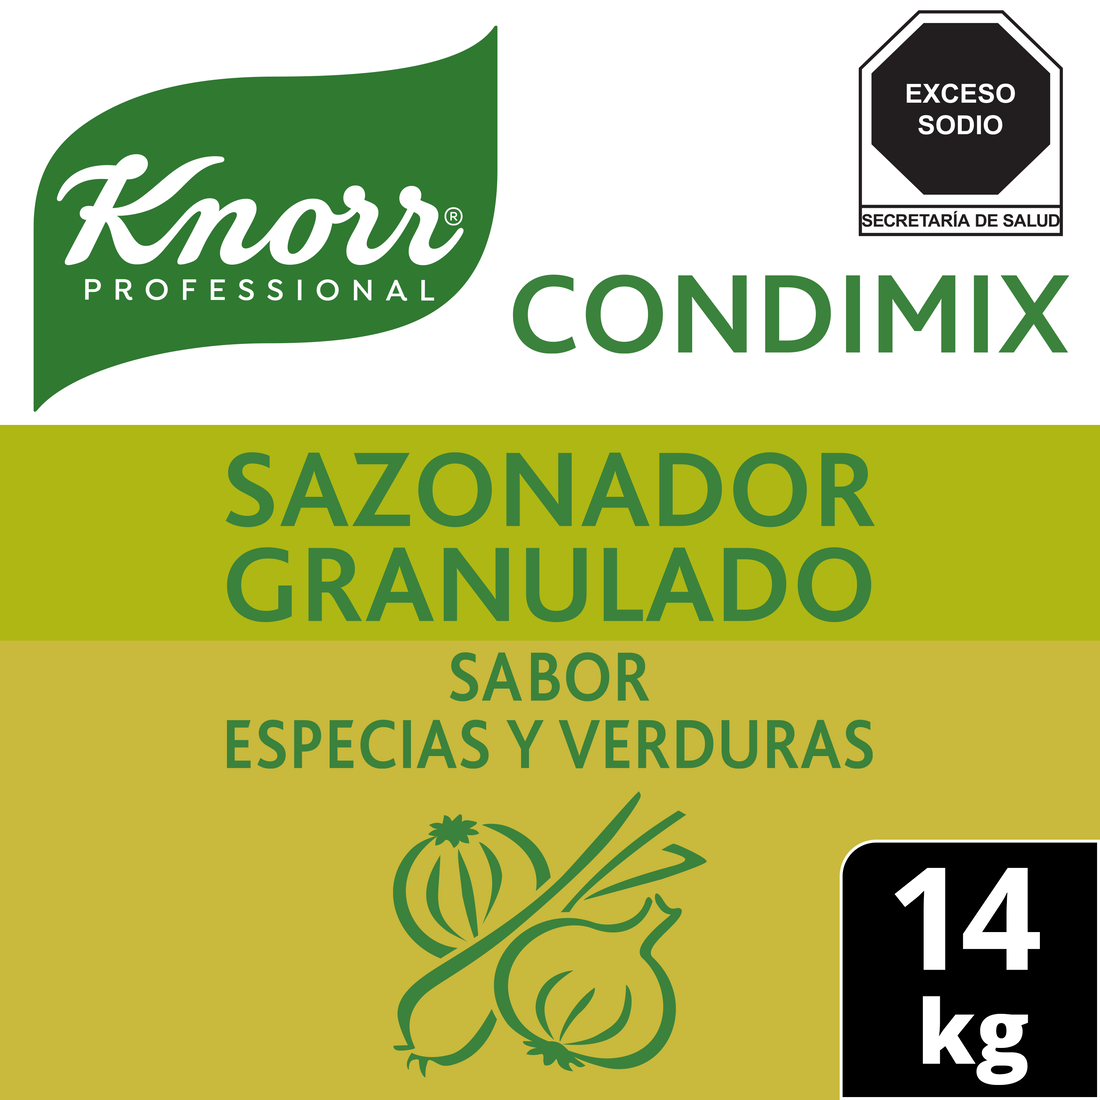 Knorr® Professional Condimix Especias y Verduras 14 Kg - Sazonador granulado sabor especias y verduras